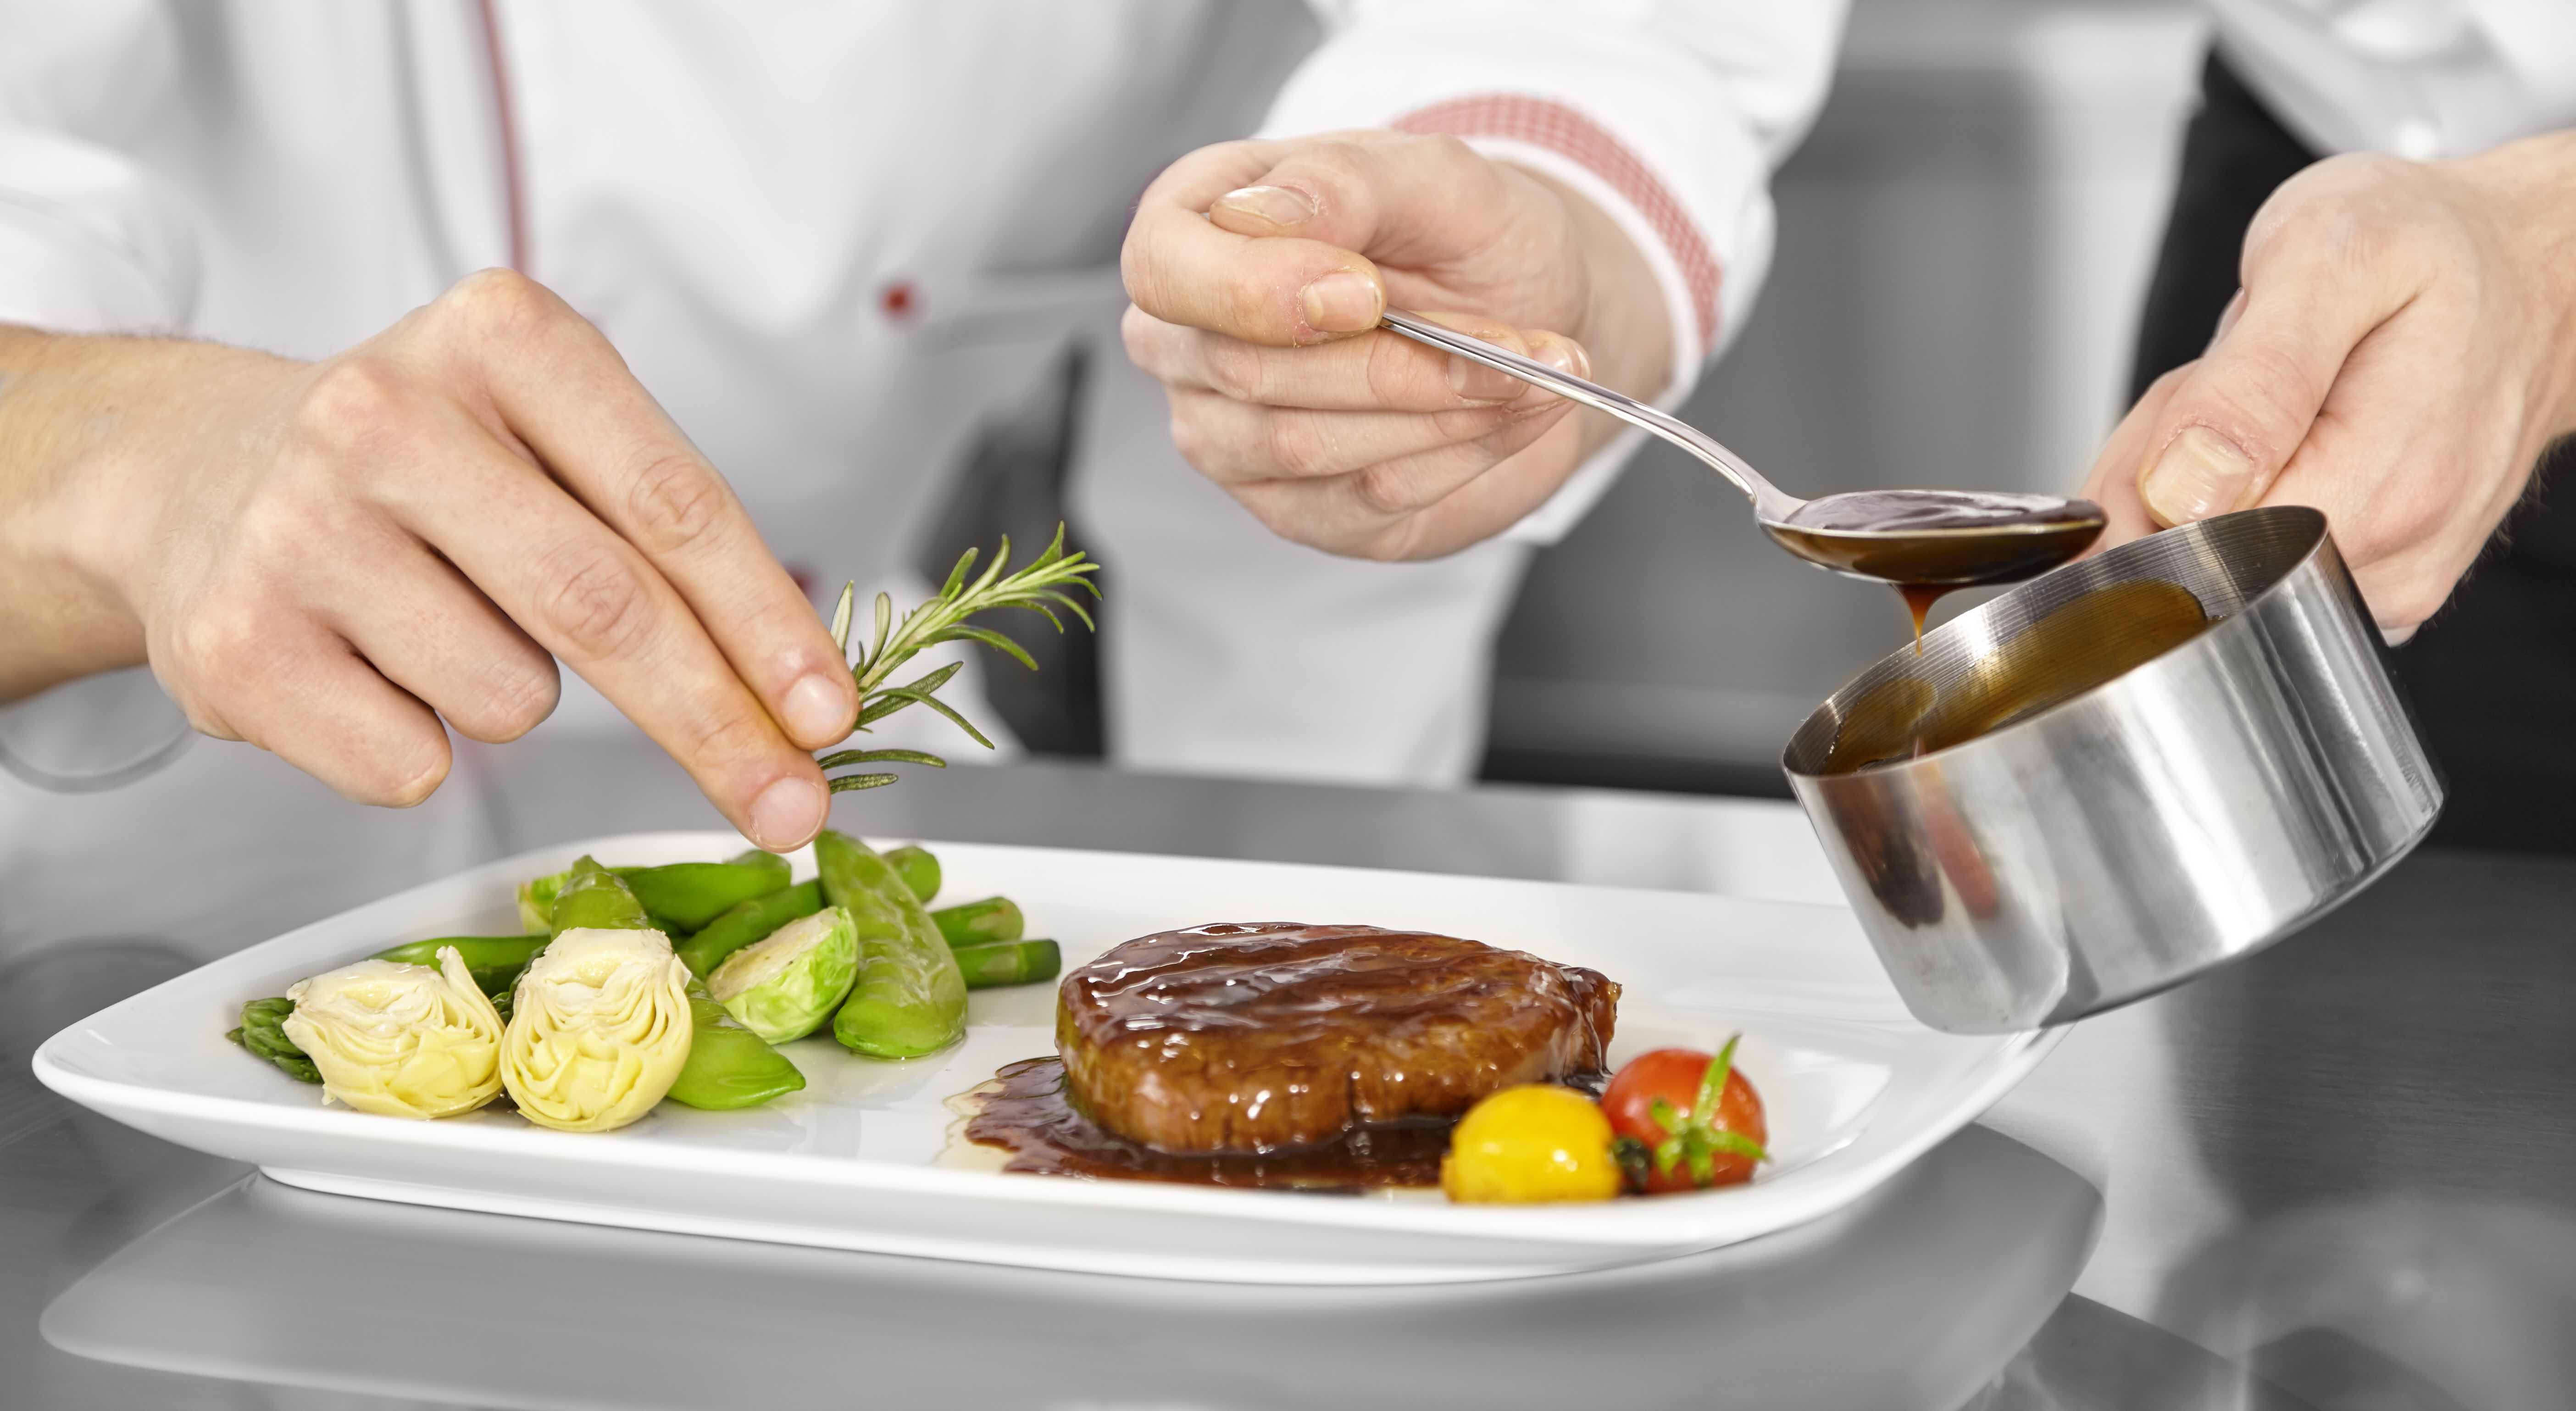 Köche richten ein Steak mit Rosmarin und Sauce an.